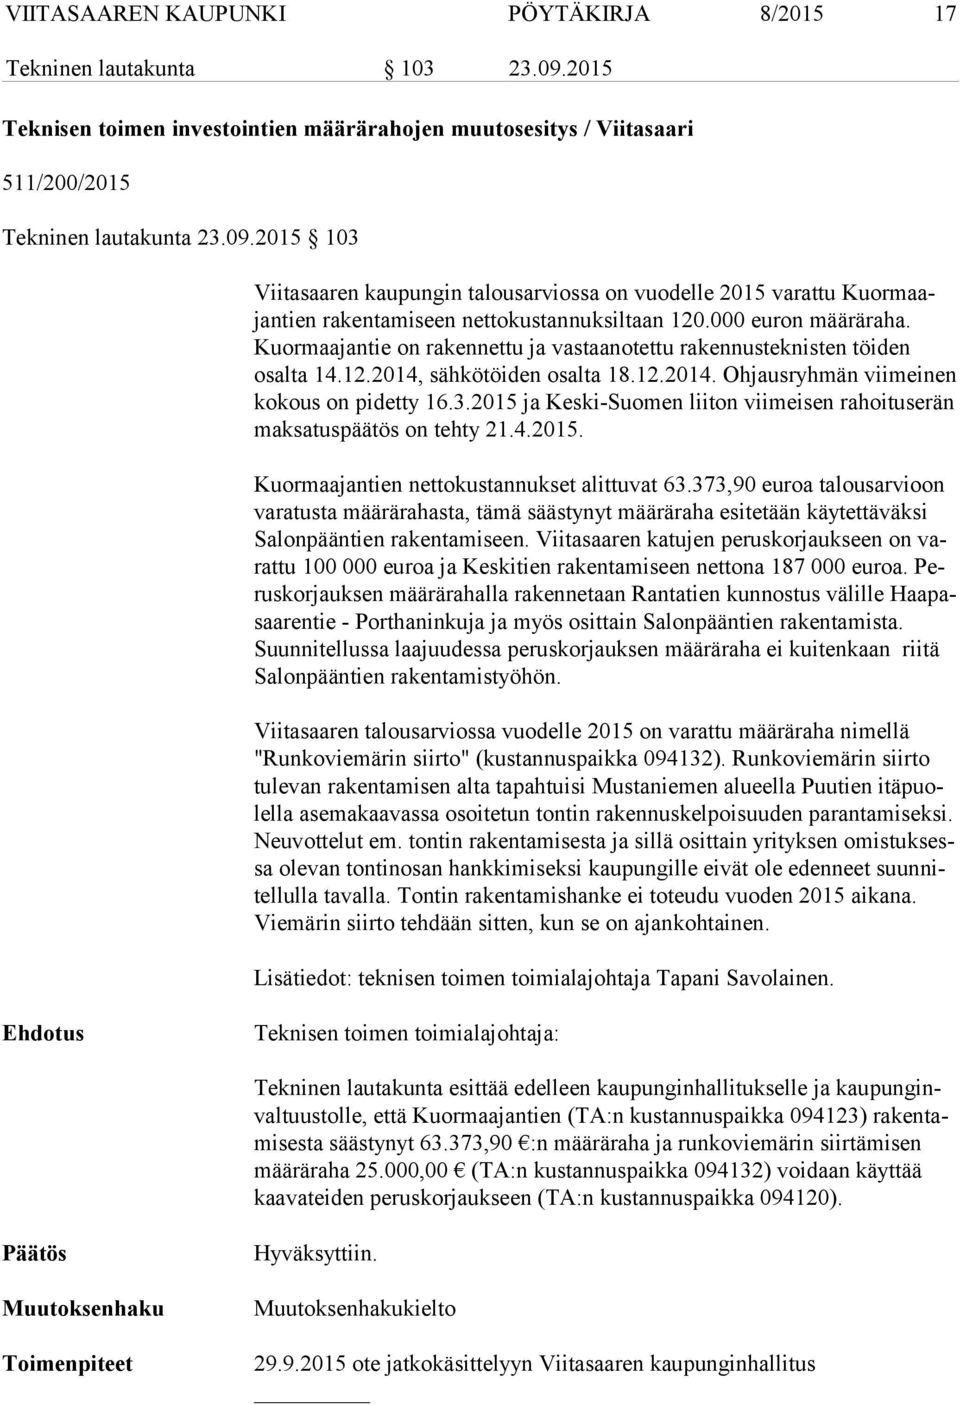 2015 ja Keski-Suomen liiton viimeisen rahoituserän mak sa tus pää tös on tehty 21.4.2015. Kuormaajantien nettokustannukset alittuvat 63.